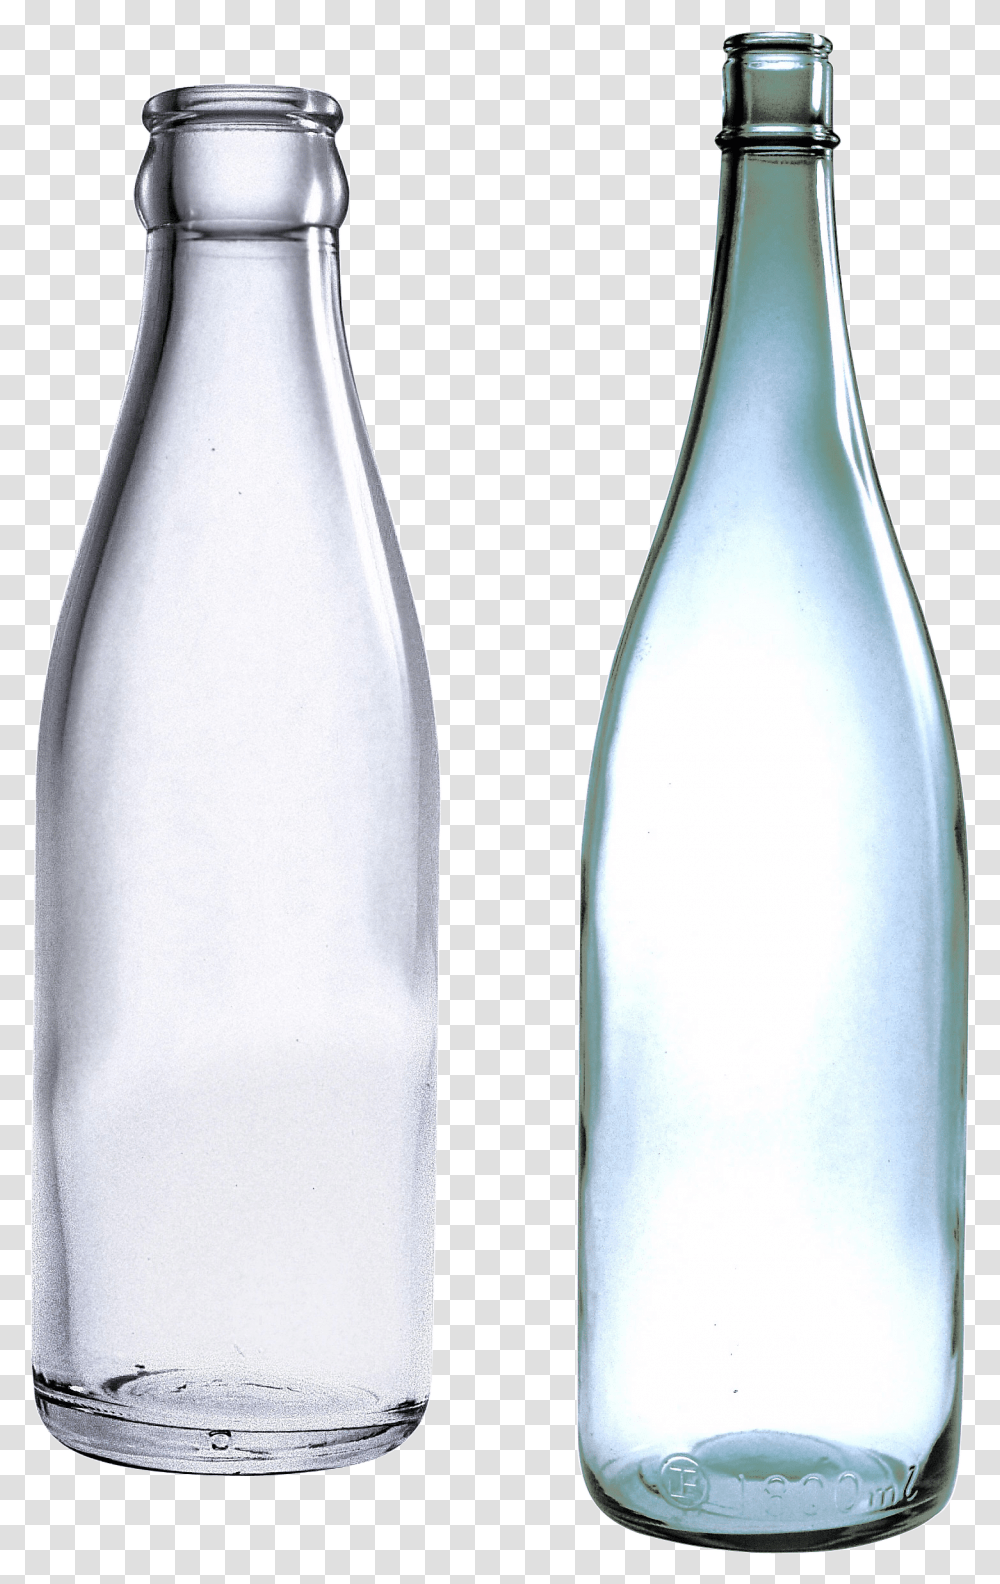 Empty Glass Bottles Image, Beverage, Drink, Alcohol, Shaker Transparent Png